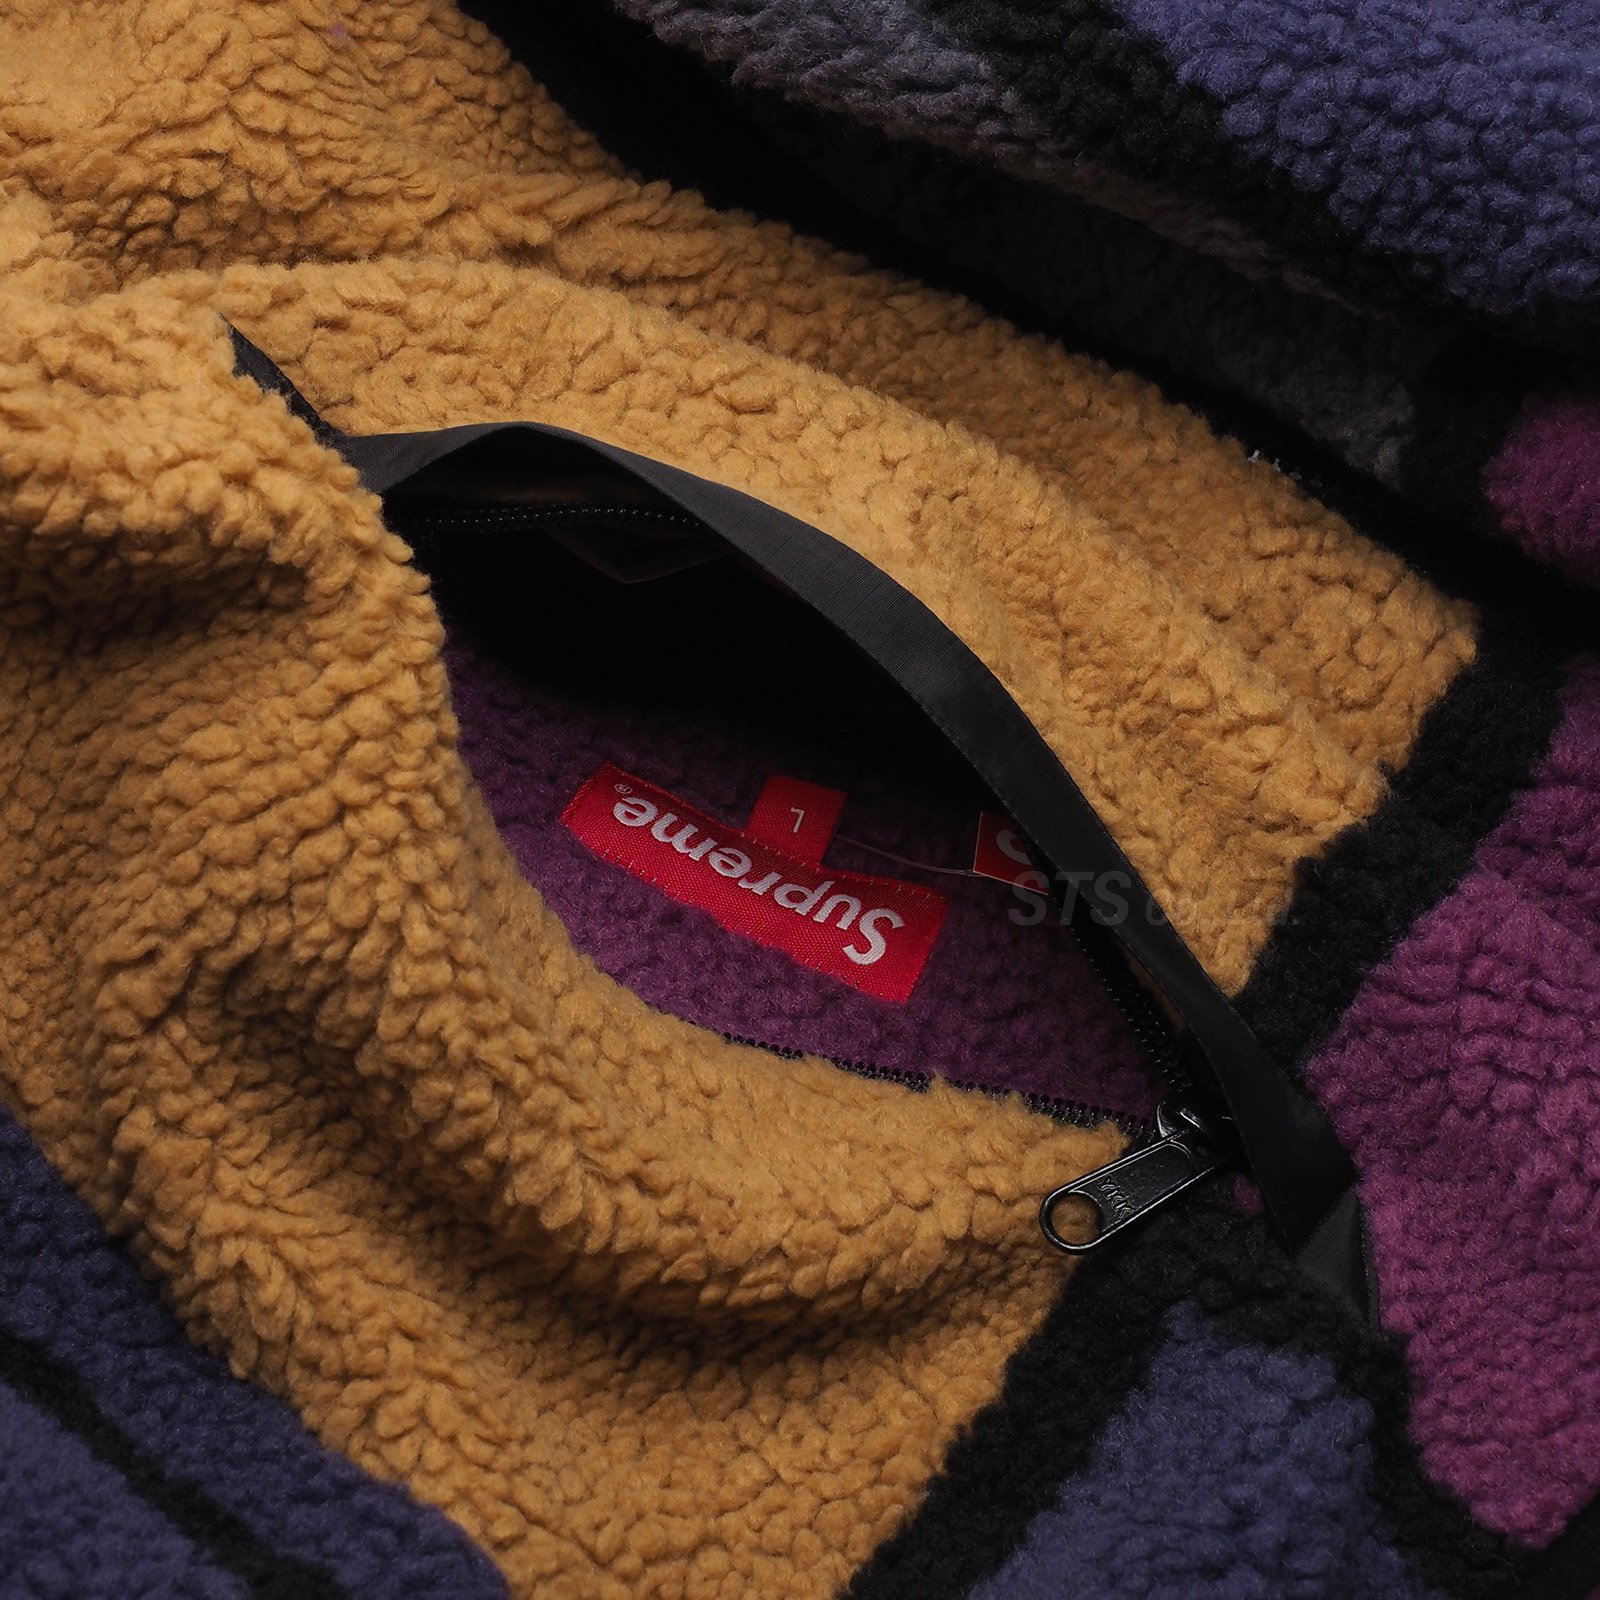 Supreme - Reversible Colorblocked Fleece Jacket - UG.SHAFT